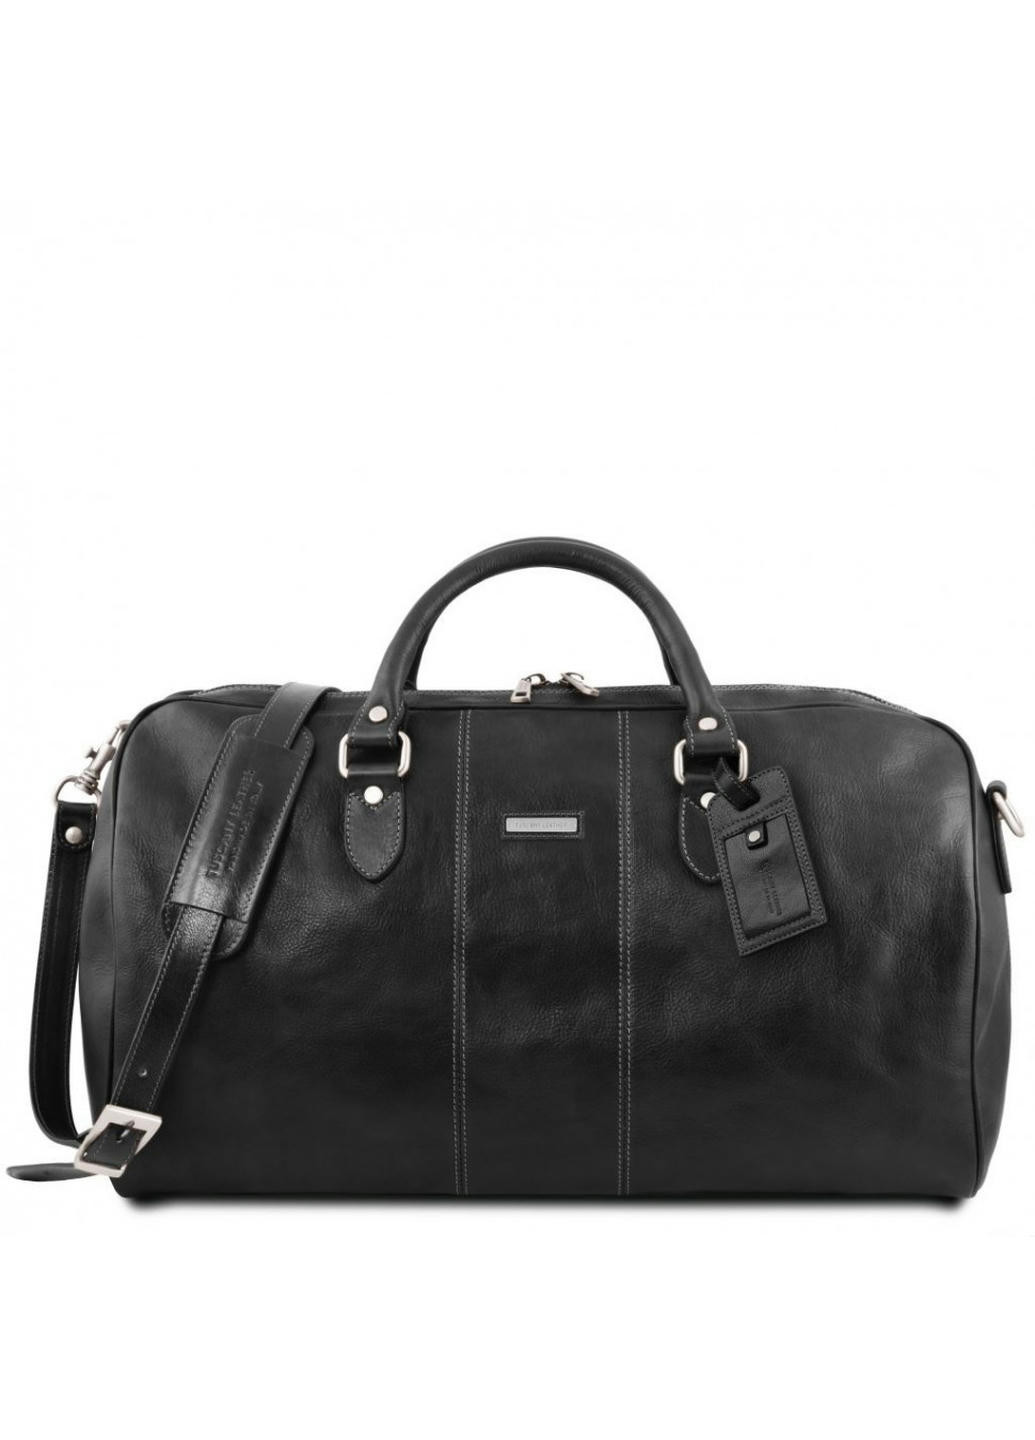 Lisbona Дорожная кожаная сумка-даффл - Большой размер Tuscany TL141657 (Черный) Tuscany Leather (257657366)